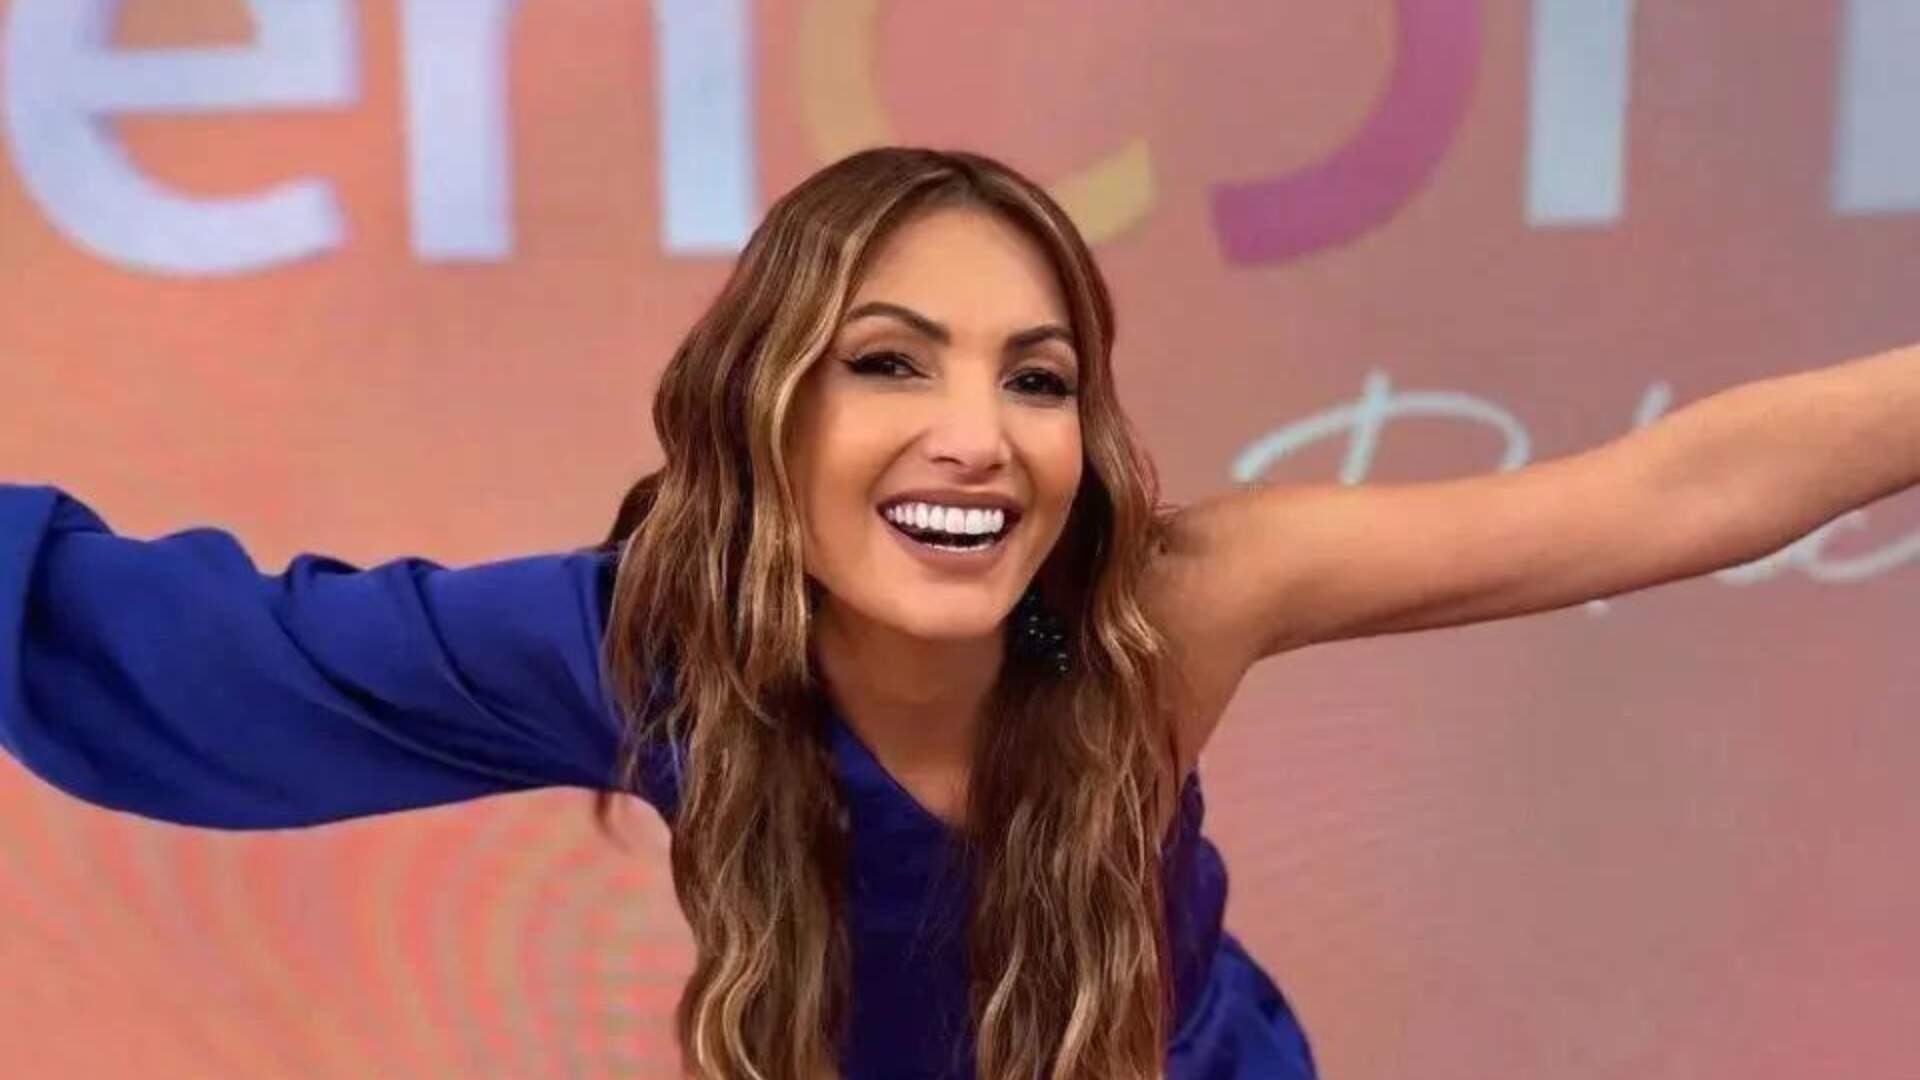 Após polêmicas com ‘Encontro’, Patrícia Poeta ganha novo reality show na Globo, diz jornalista - Metropolitana FM